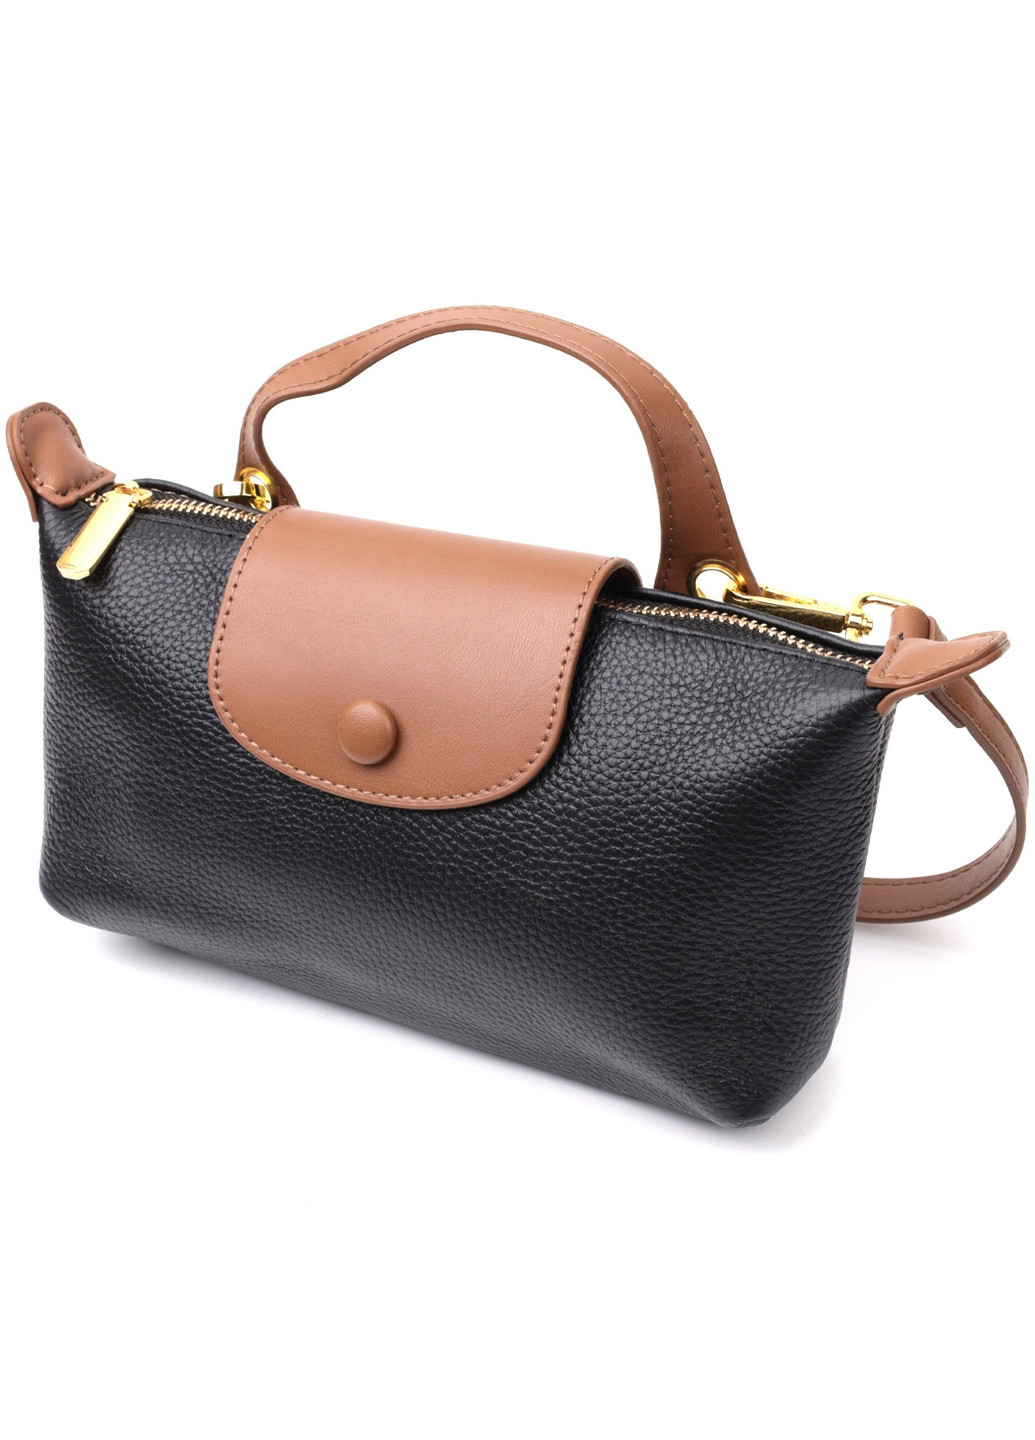 Женская кожаная сумка 22х13,5х6 см Vintage (276531267)